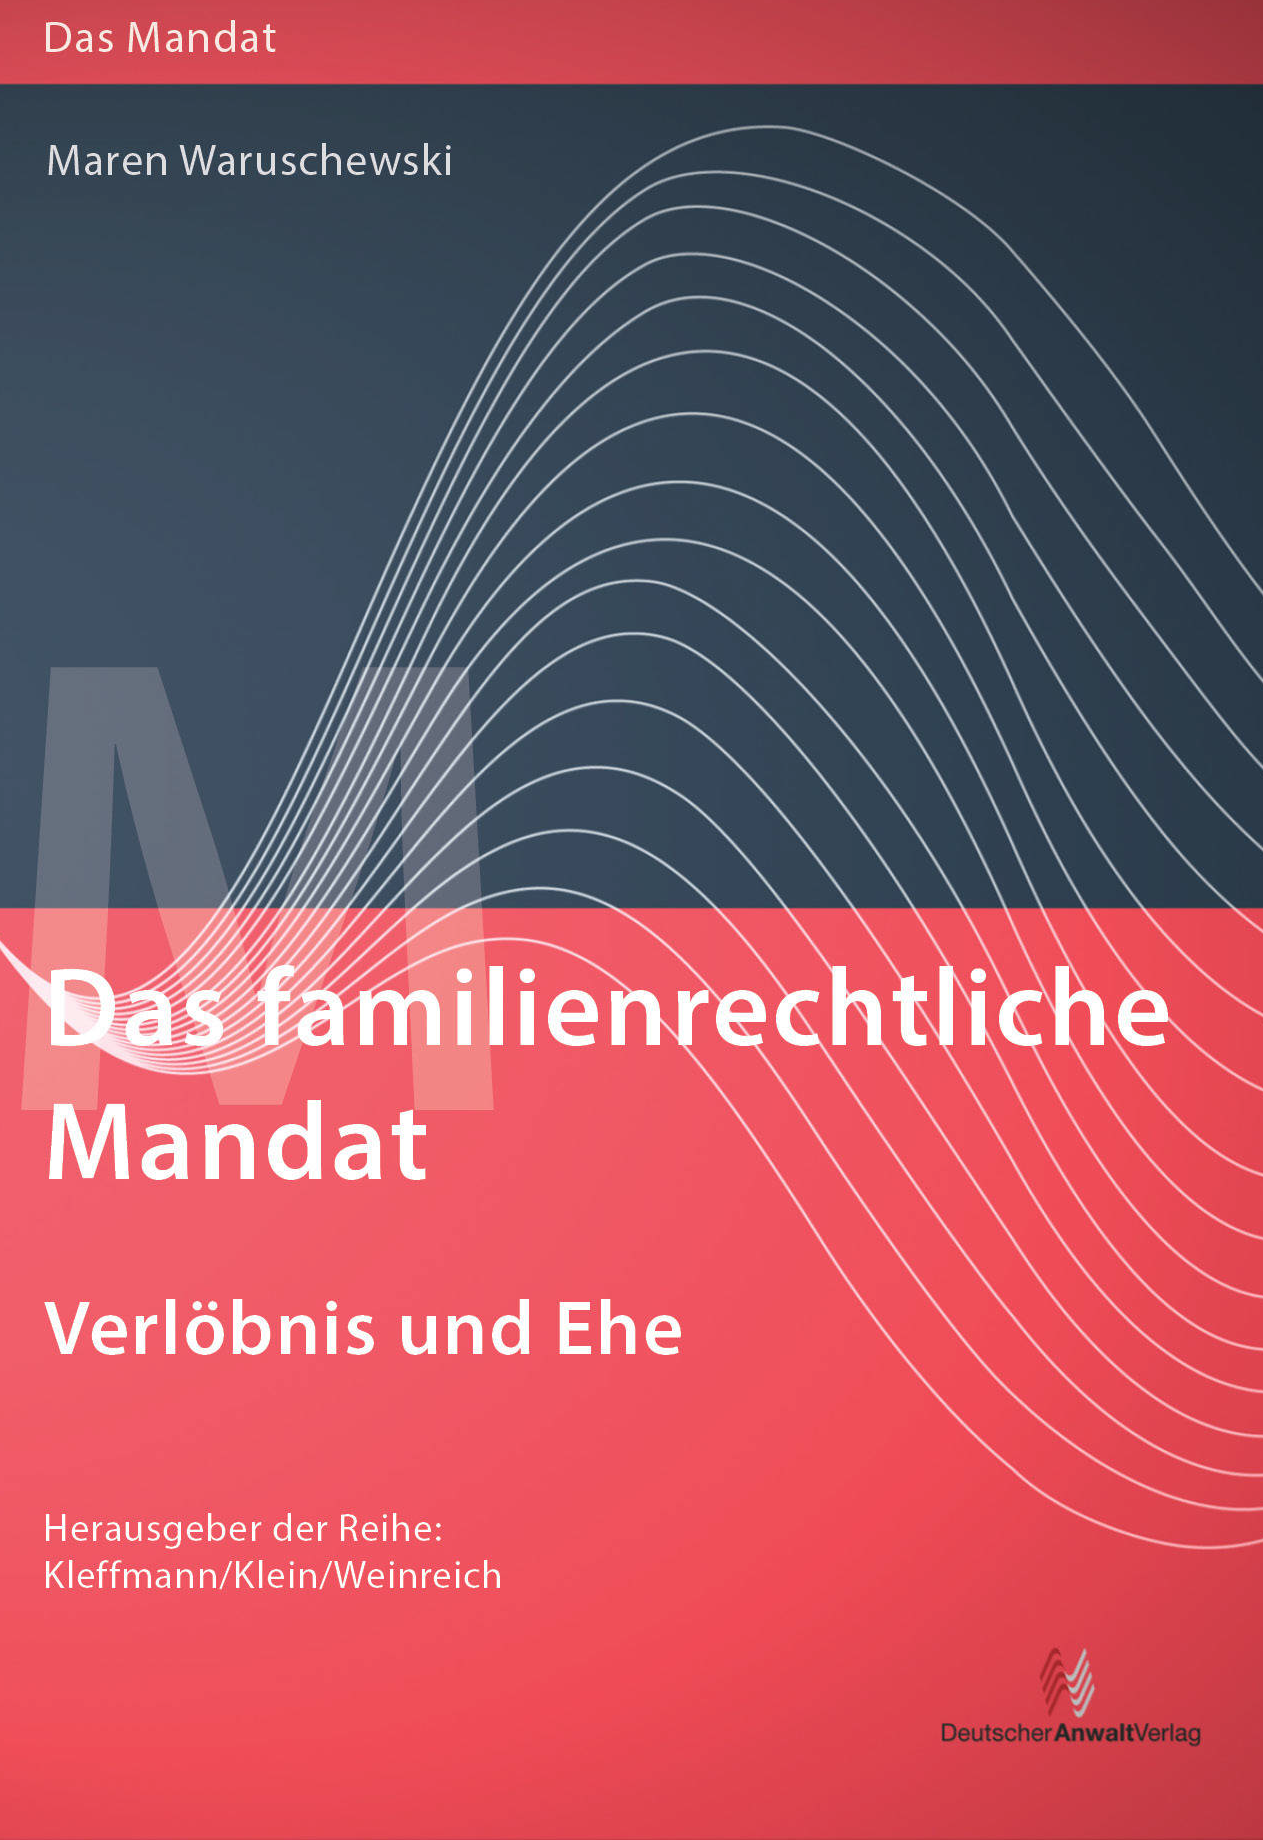 Abbildung: Das familienrechtliche Mandat - Verlöbnis und Ehe